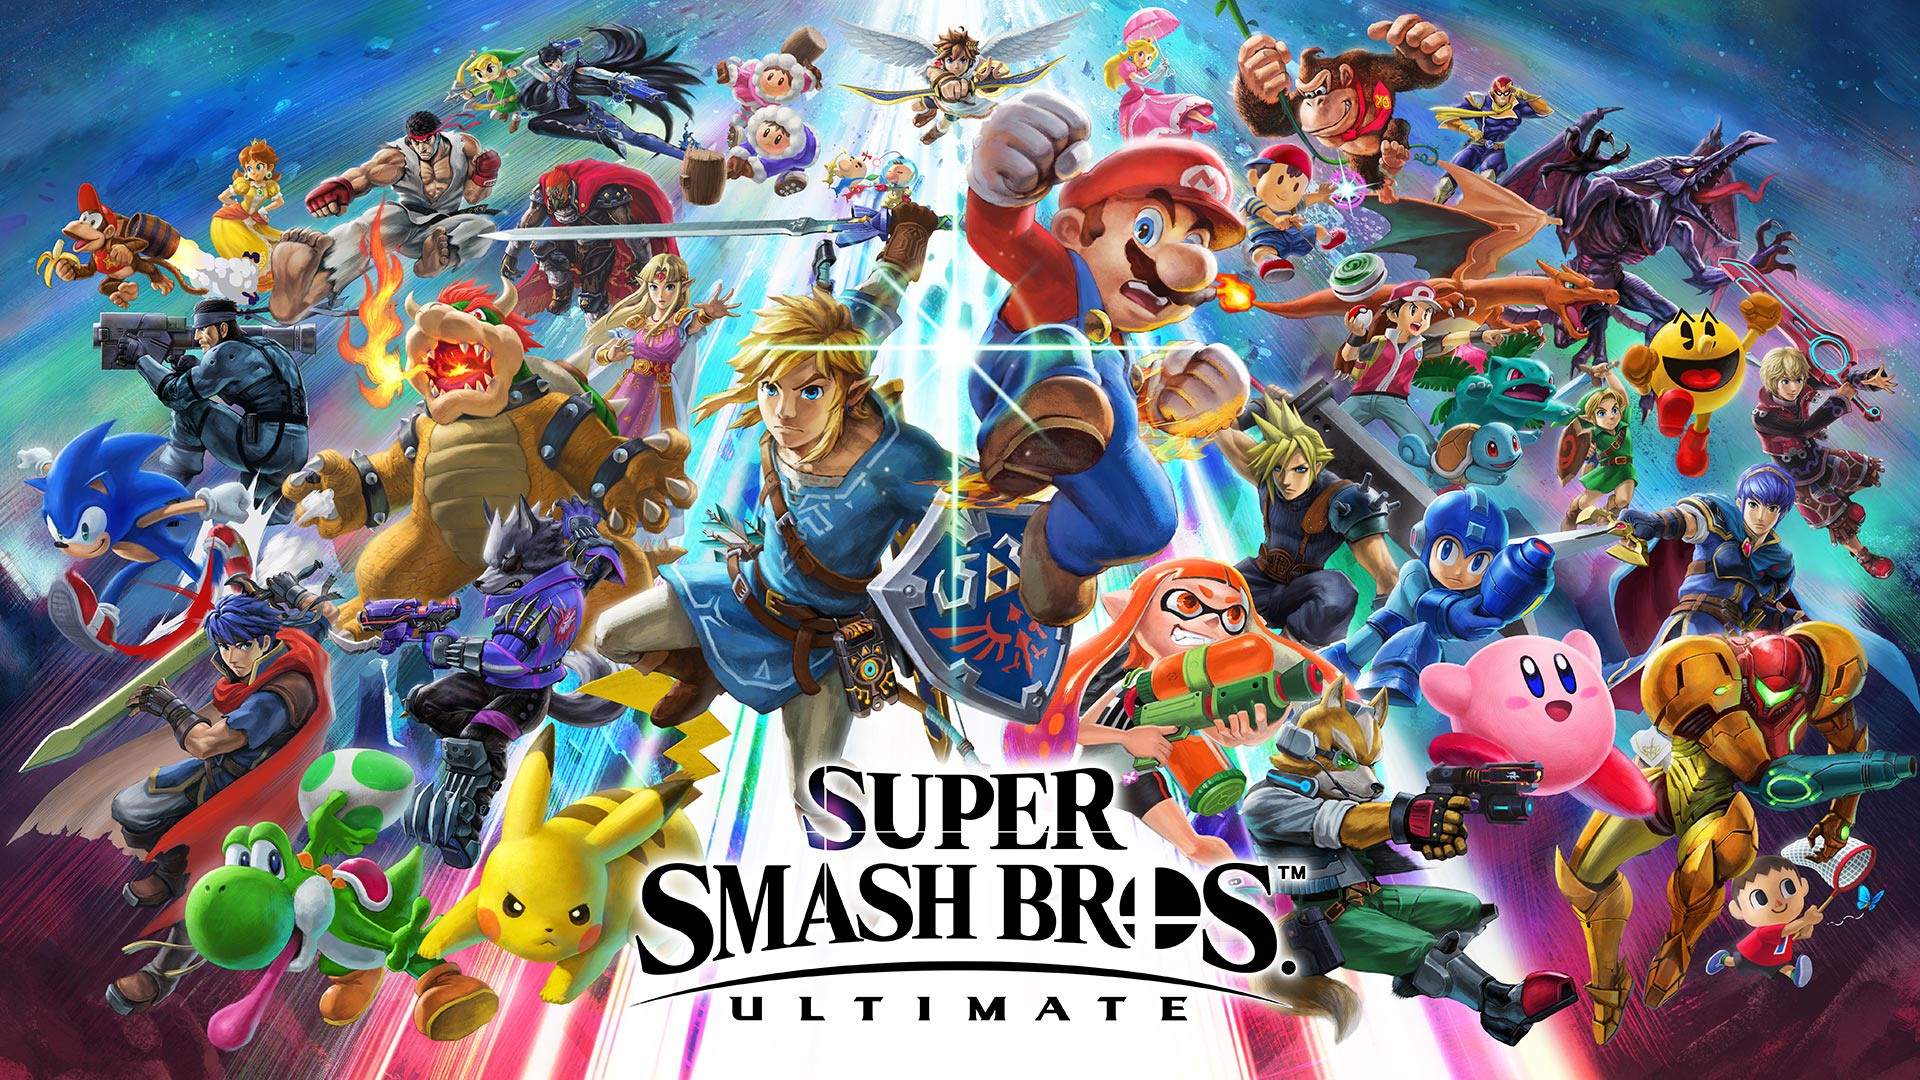 ʻO ka Super Smash Bros Ultimate